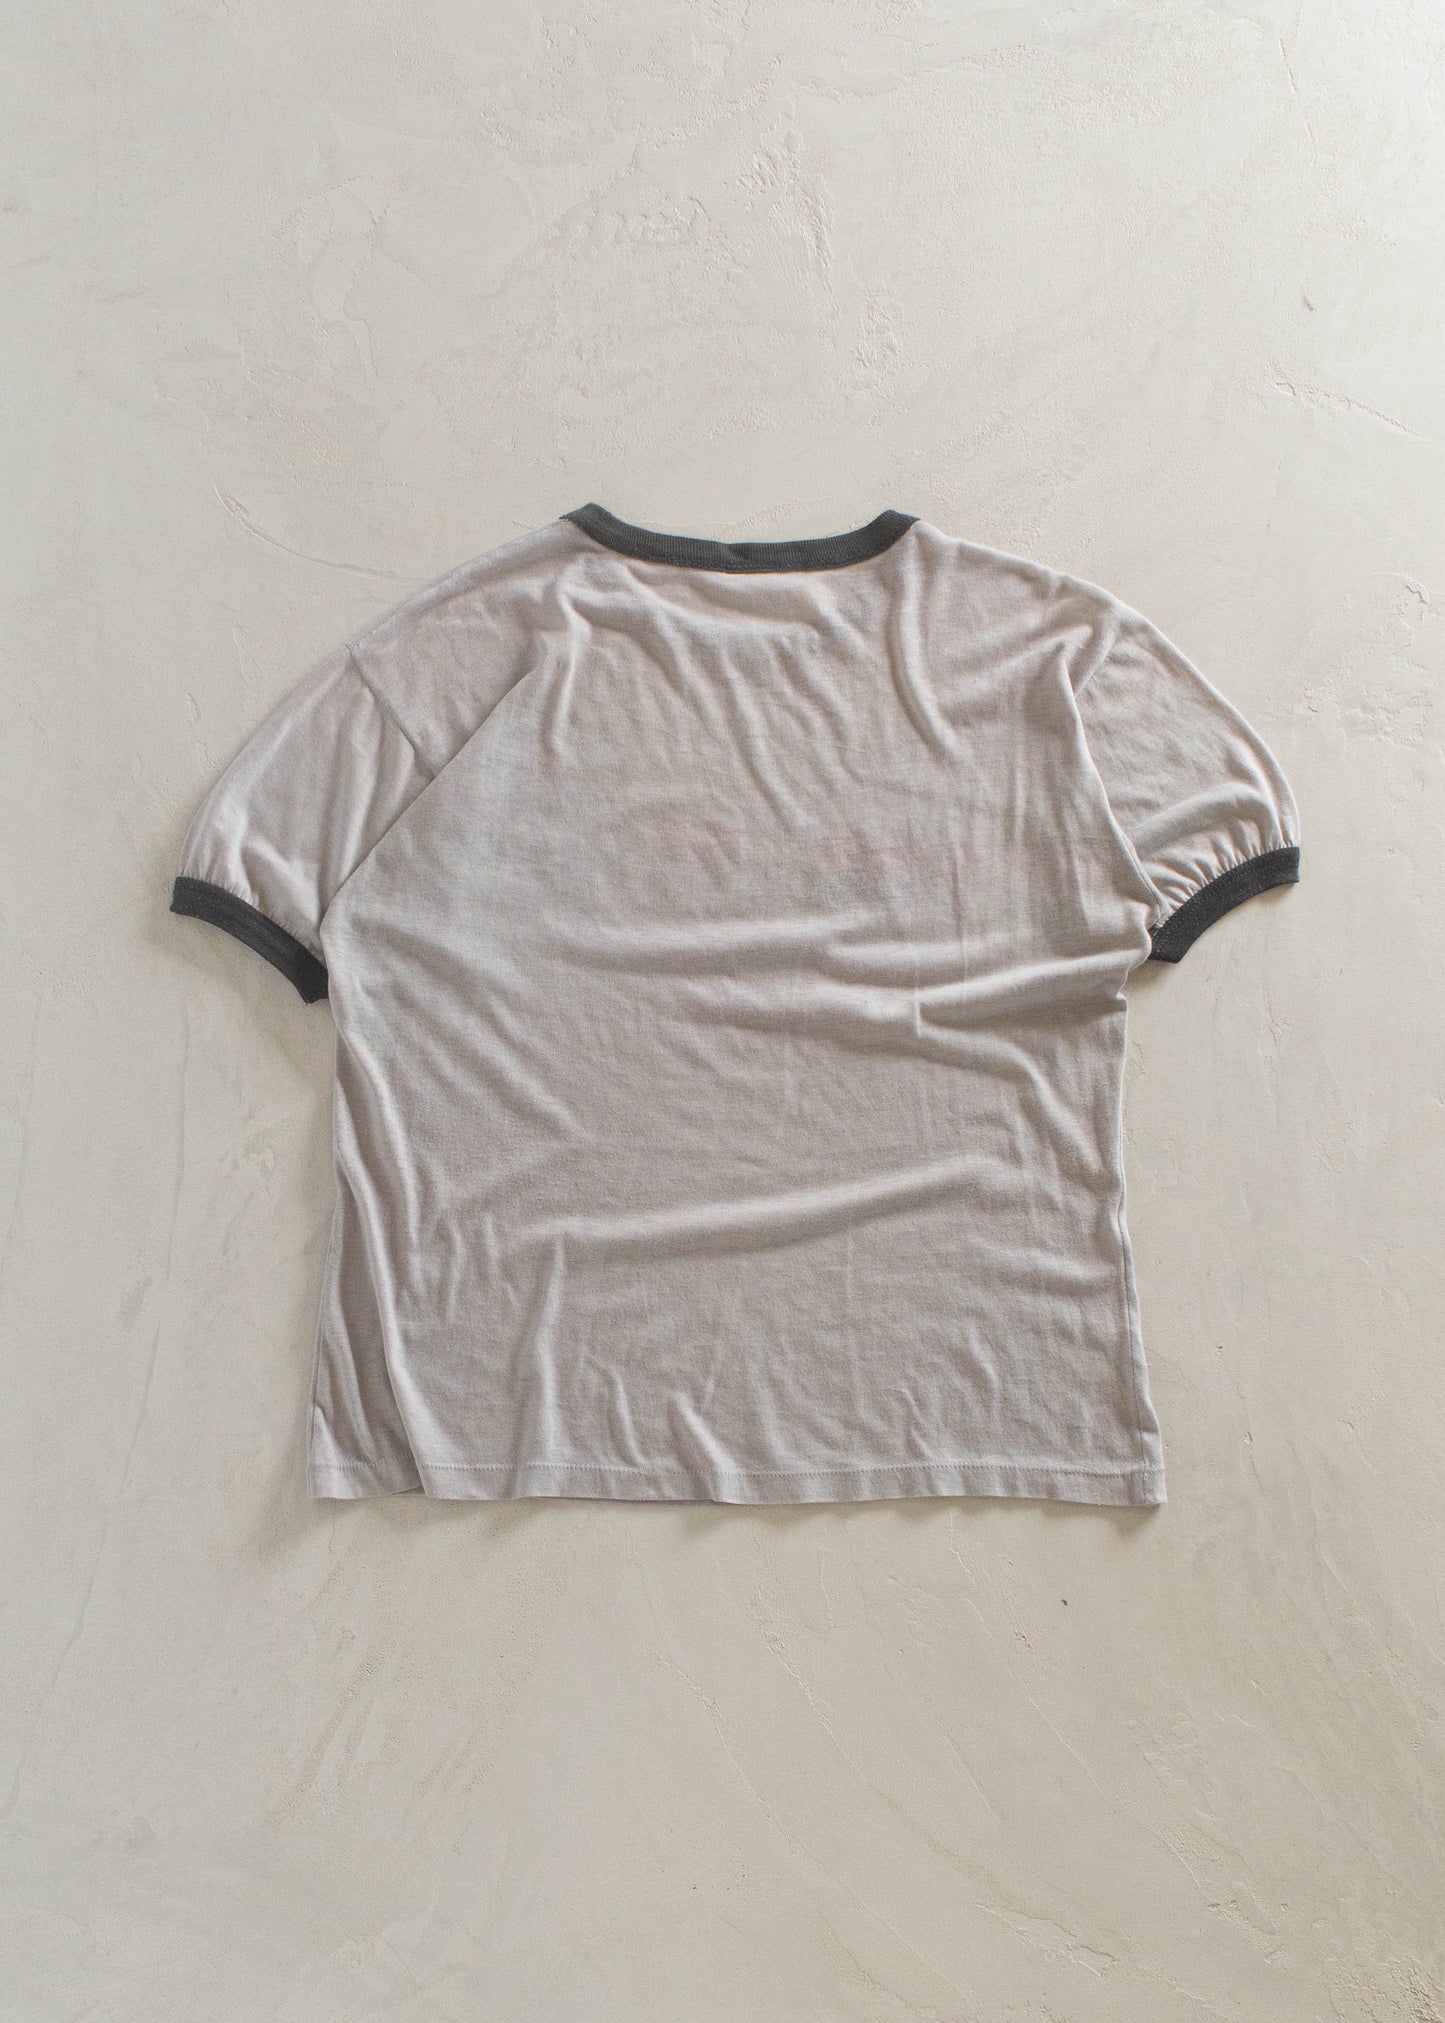 1980s Texaco Social Club T-Shirt Size M/L